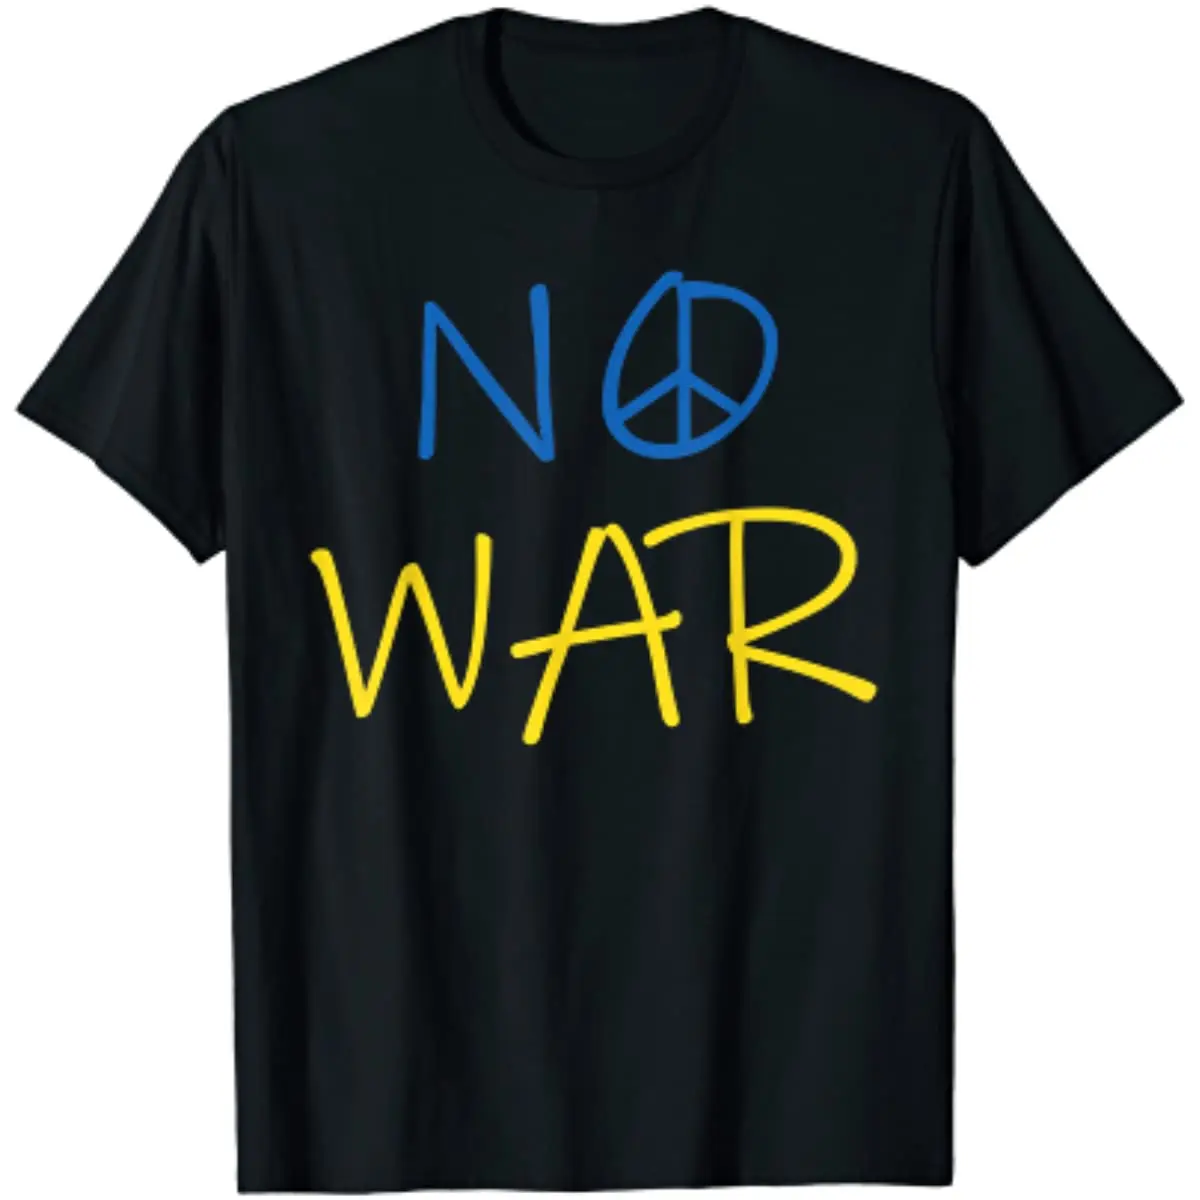 

Peace Women Men T-Shirt No War Mens T Shirts Graphic T Shirts Casual Cotton Daily Four Seasons Tees Men Clothing T Shirts